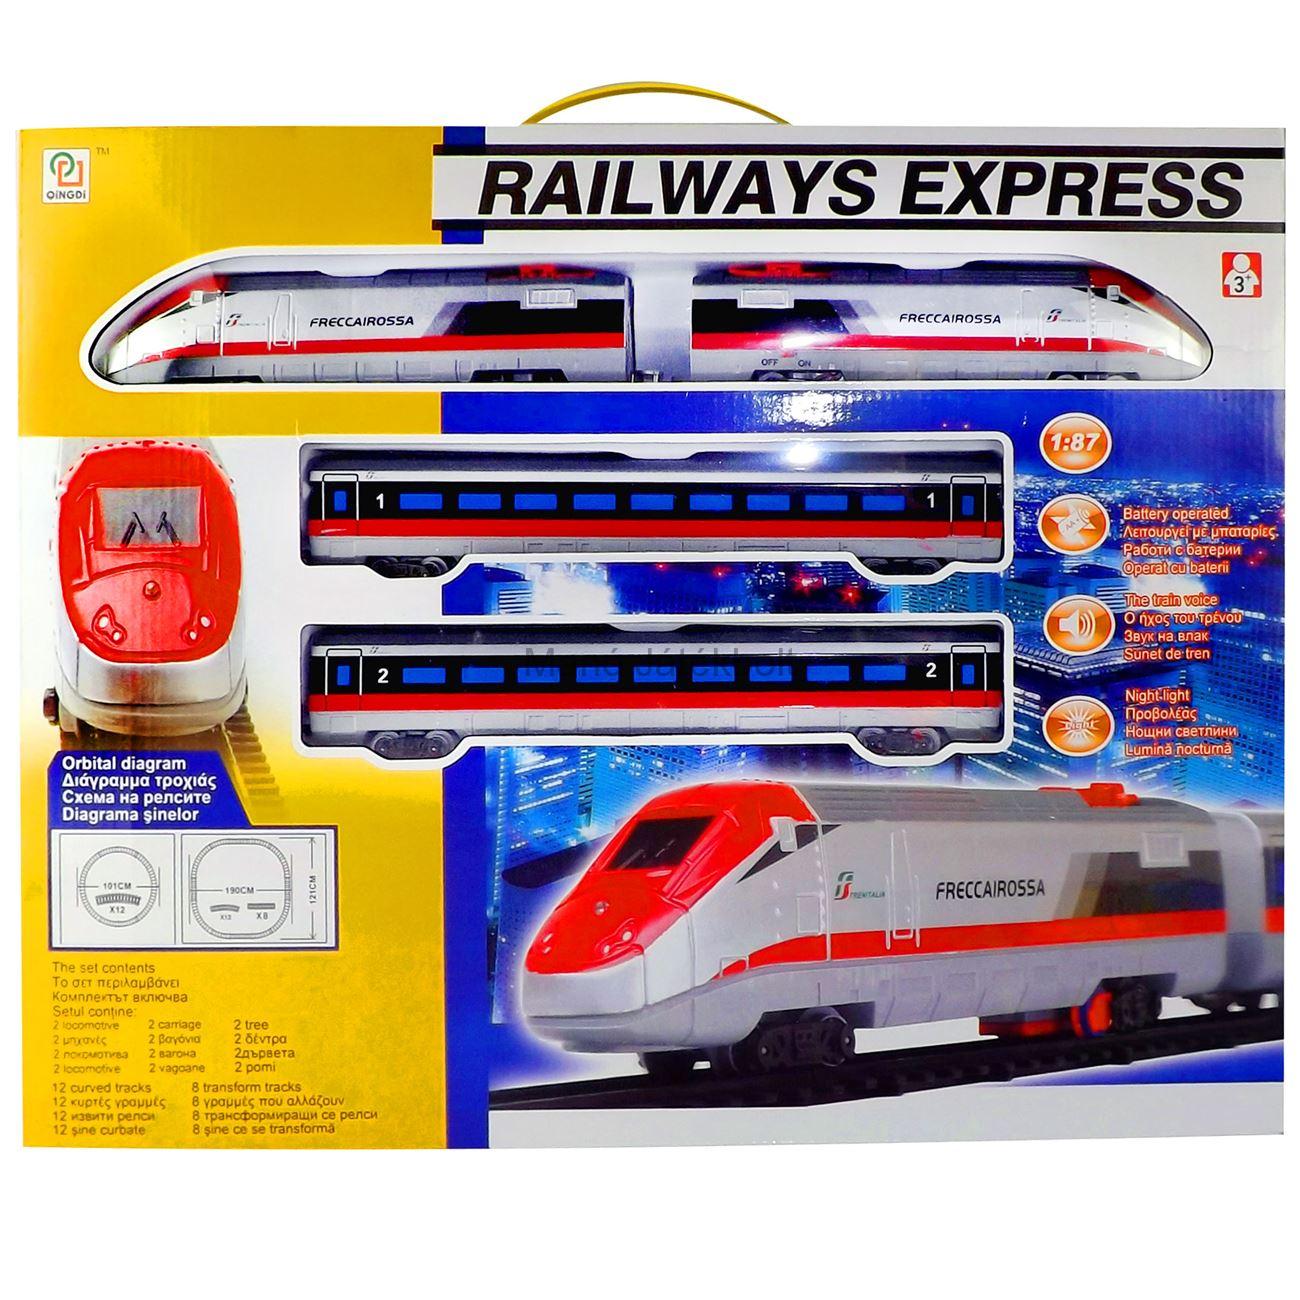 Express vonat pálya